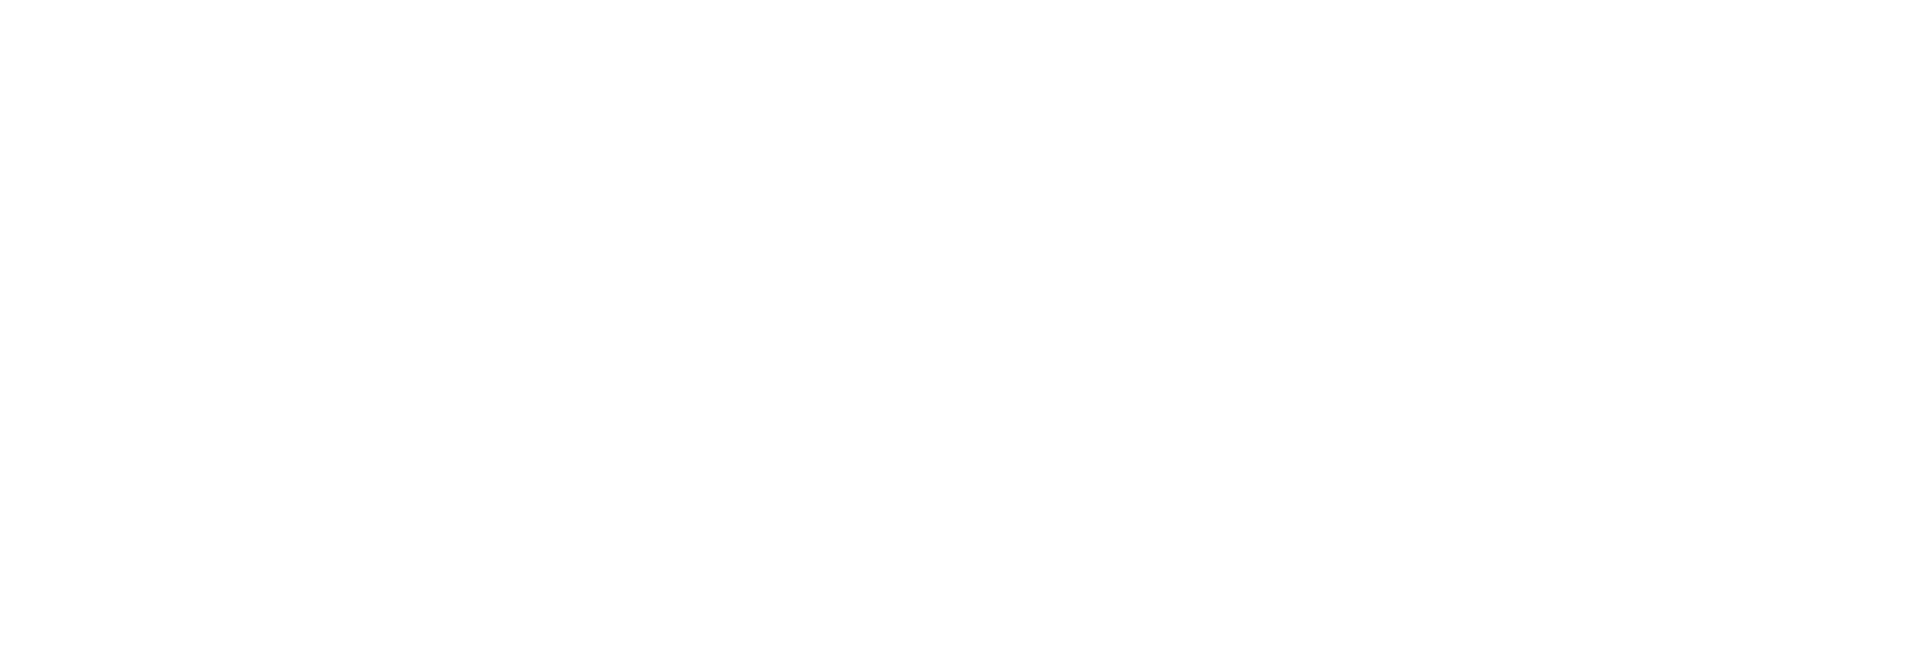 Speel Oros Gaming games op Starcasino.be